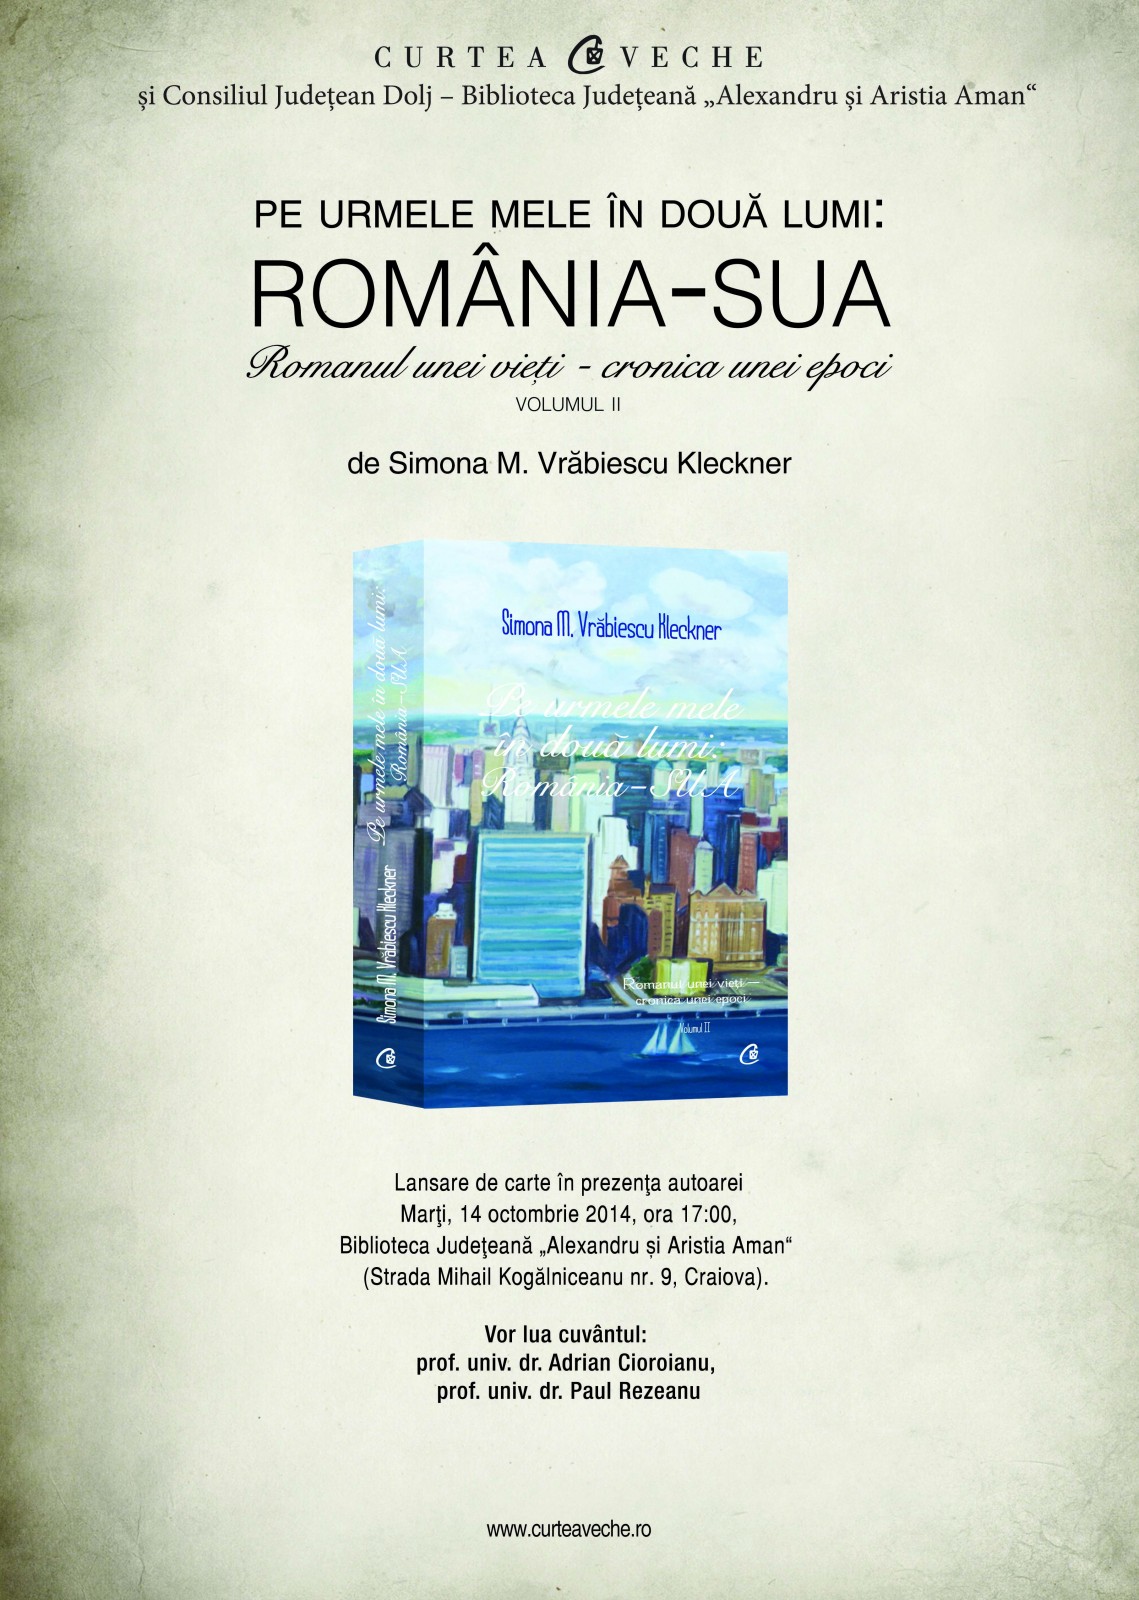 „Pe urmele mele în două lumi”, lansare de carte în Craiova